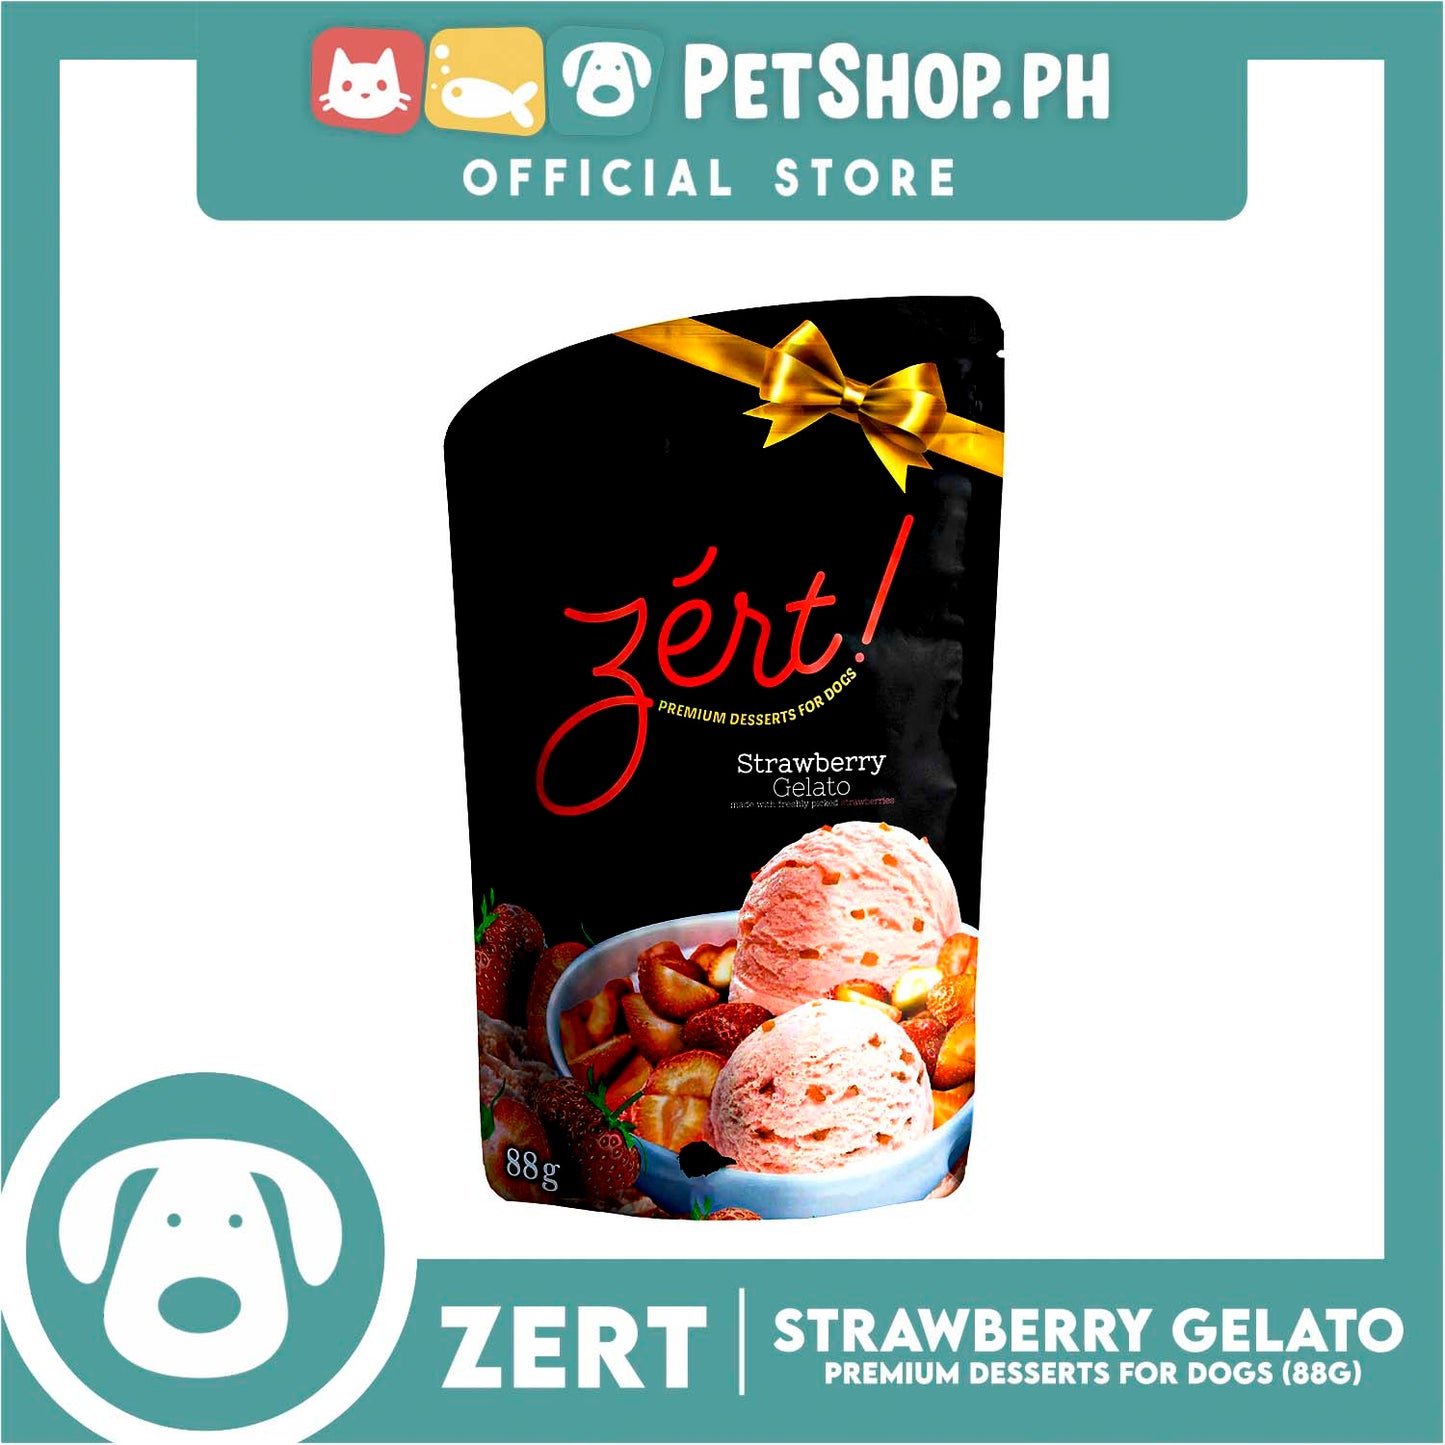 Zert Premium Desserts for Dogs 88g (Strawberry Gelato)